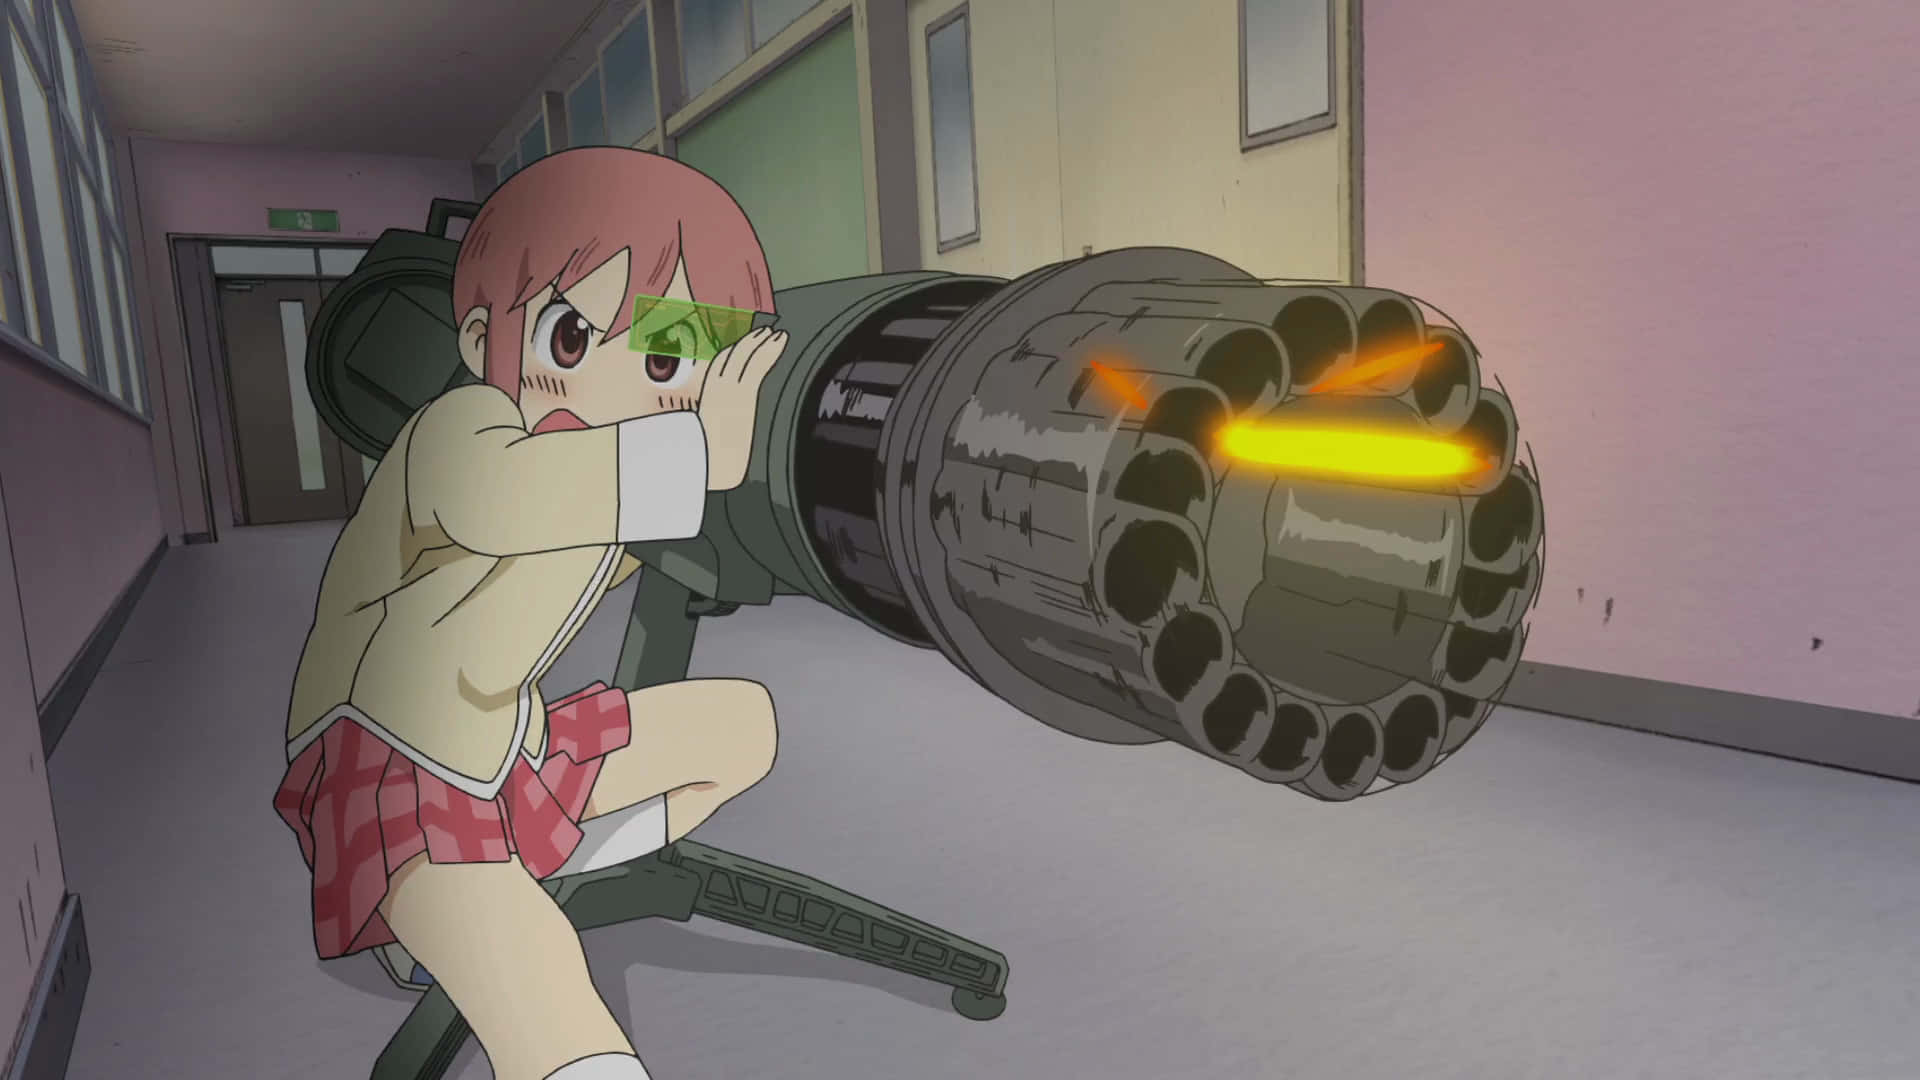 Unachica Sostiene Una Pistola En Un Pasillo De Anime. Fondo de pantalla